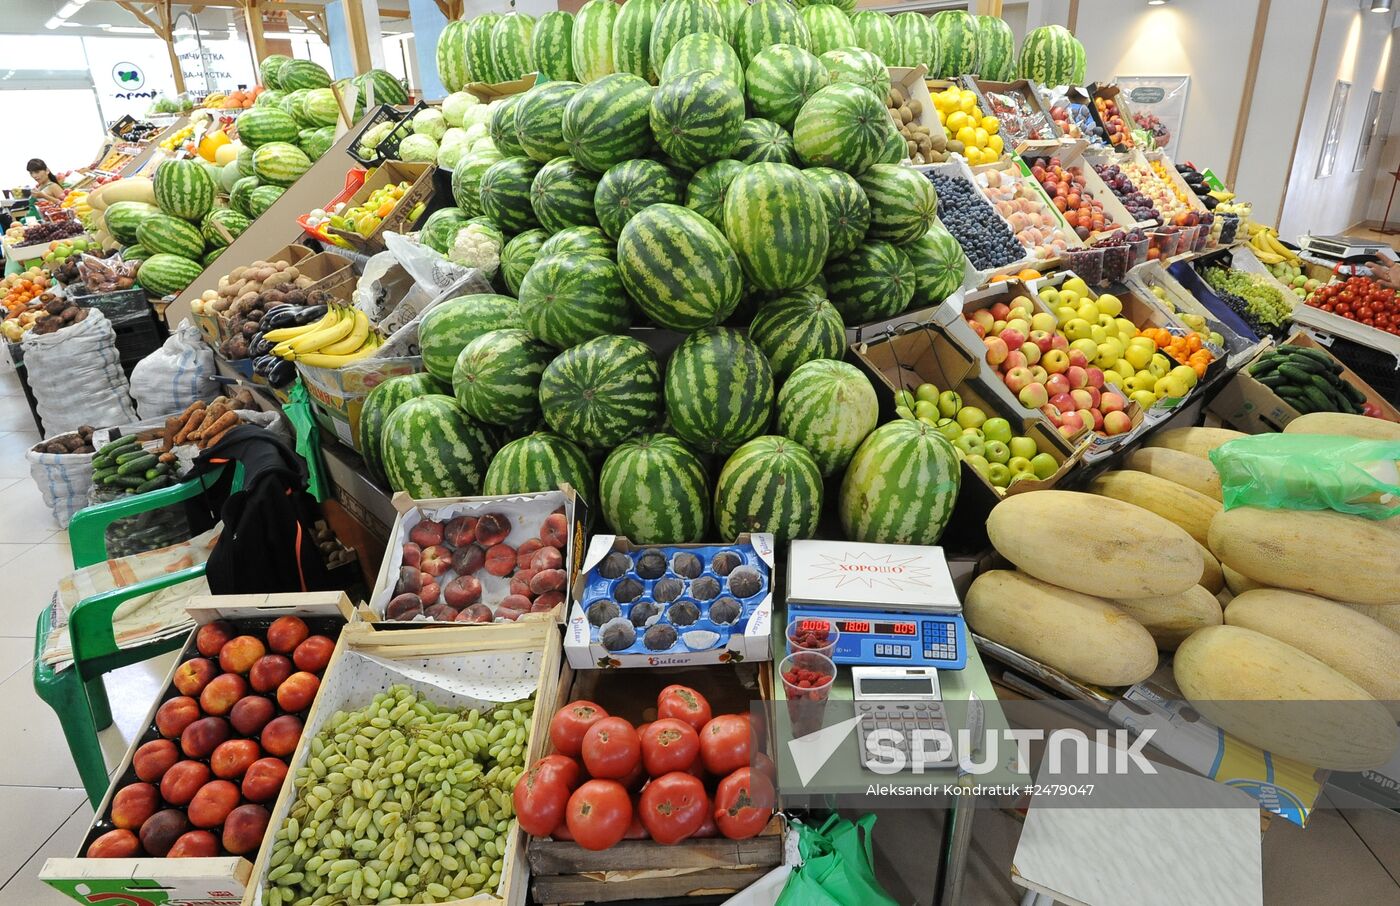 Grocery market in Chelyabinsk